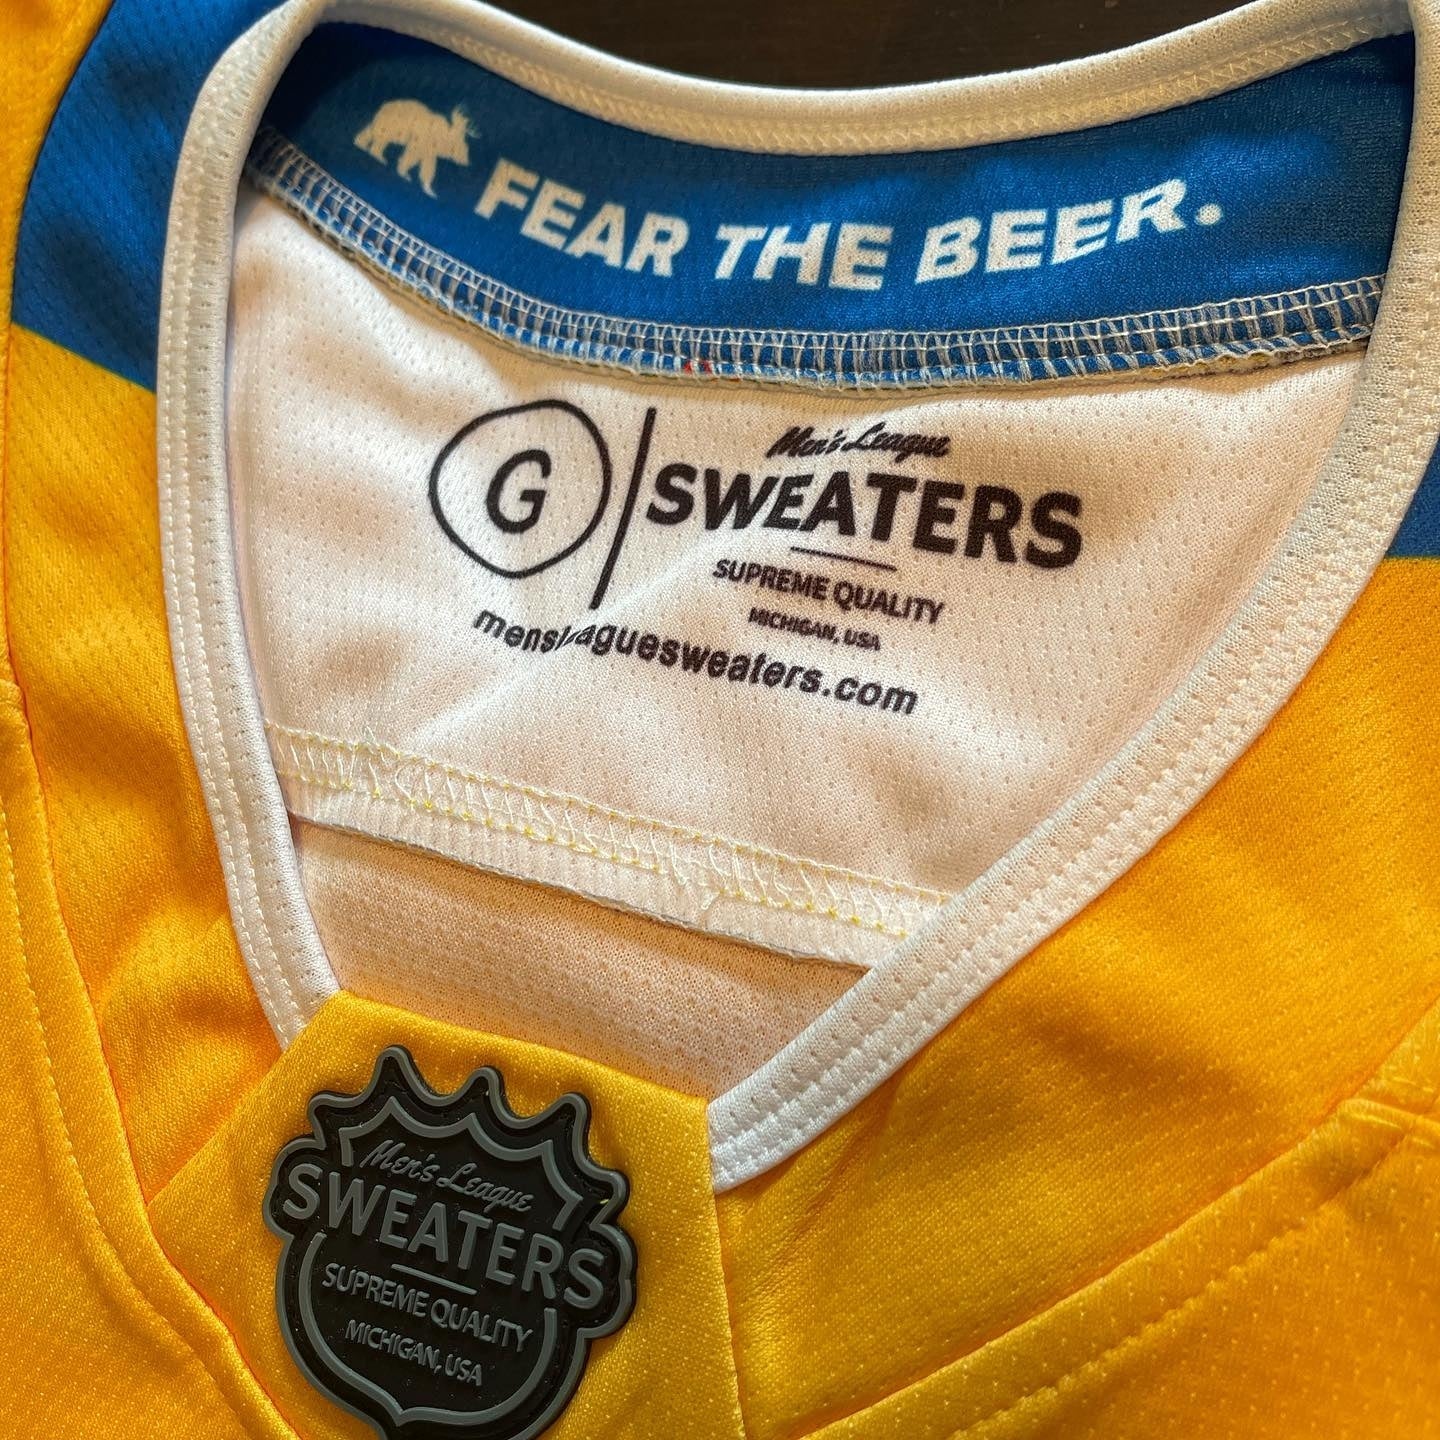 🔥 Personalized #Flavortown jerseys - Men's League Sweaters